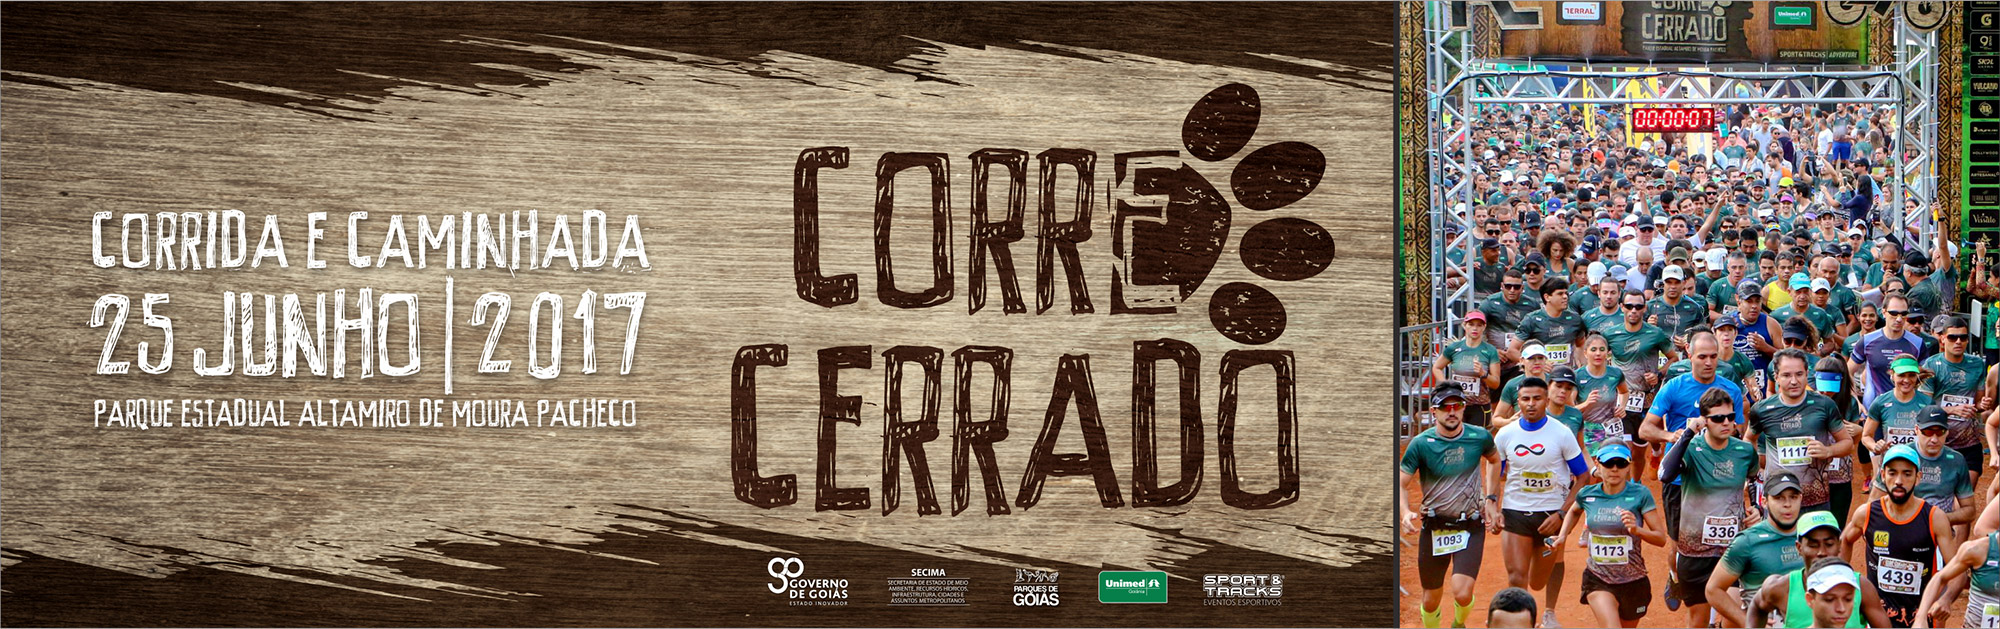 CORRE CERRADO 2017 | corrida e caminhada 6K - 12K